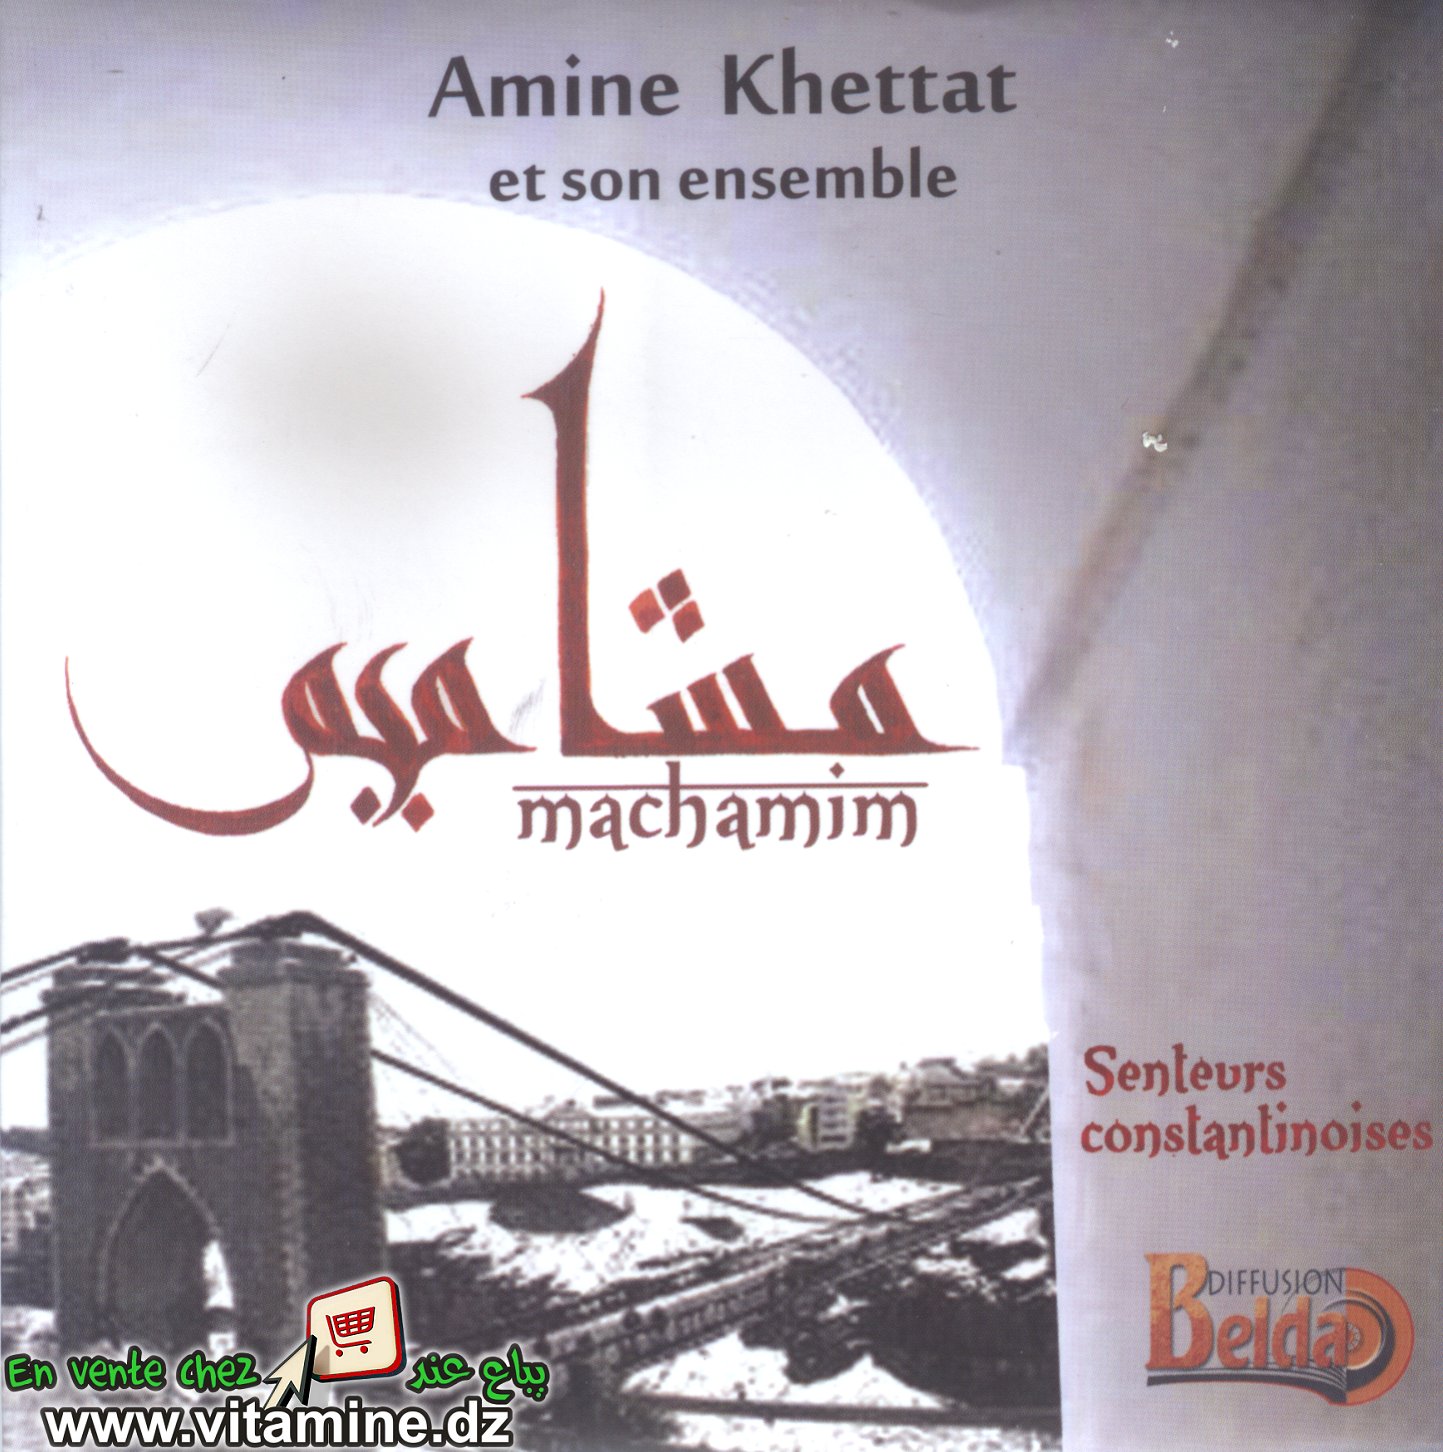 Amine Khettat - machamim